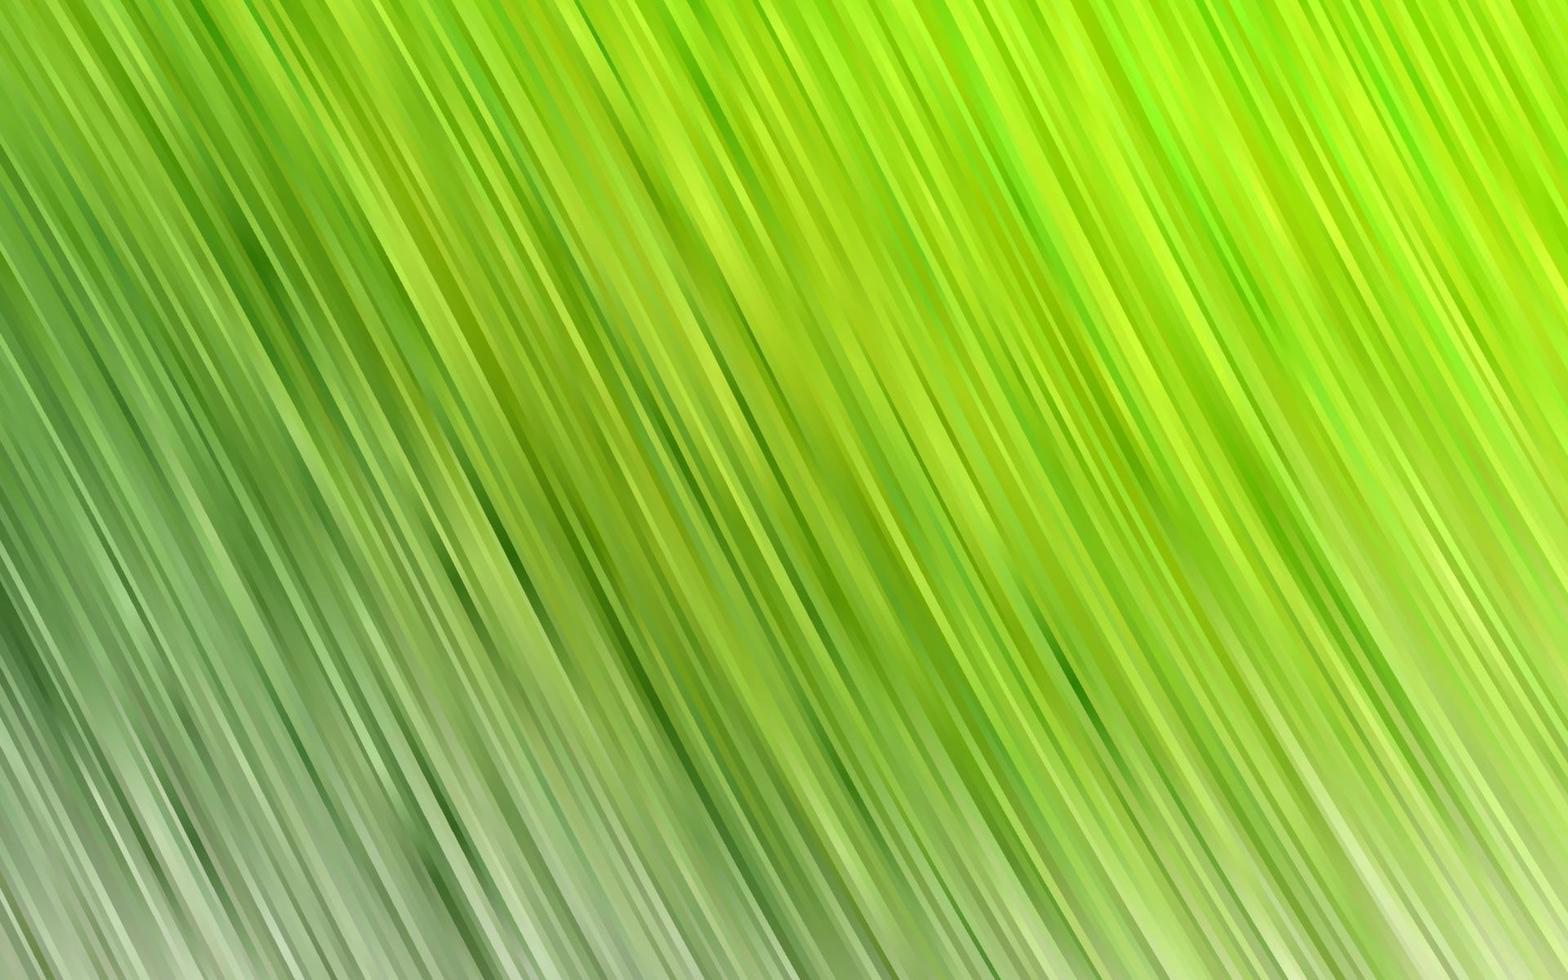 sfondo vettoriale verde chiaro con cerchi curvi.